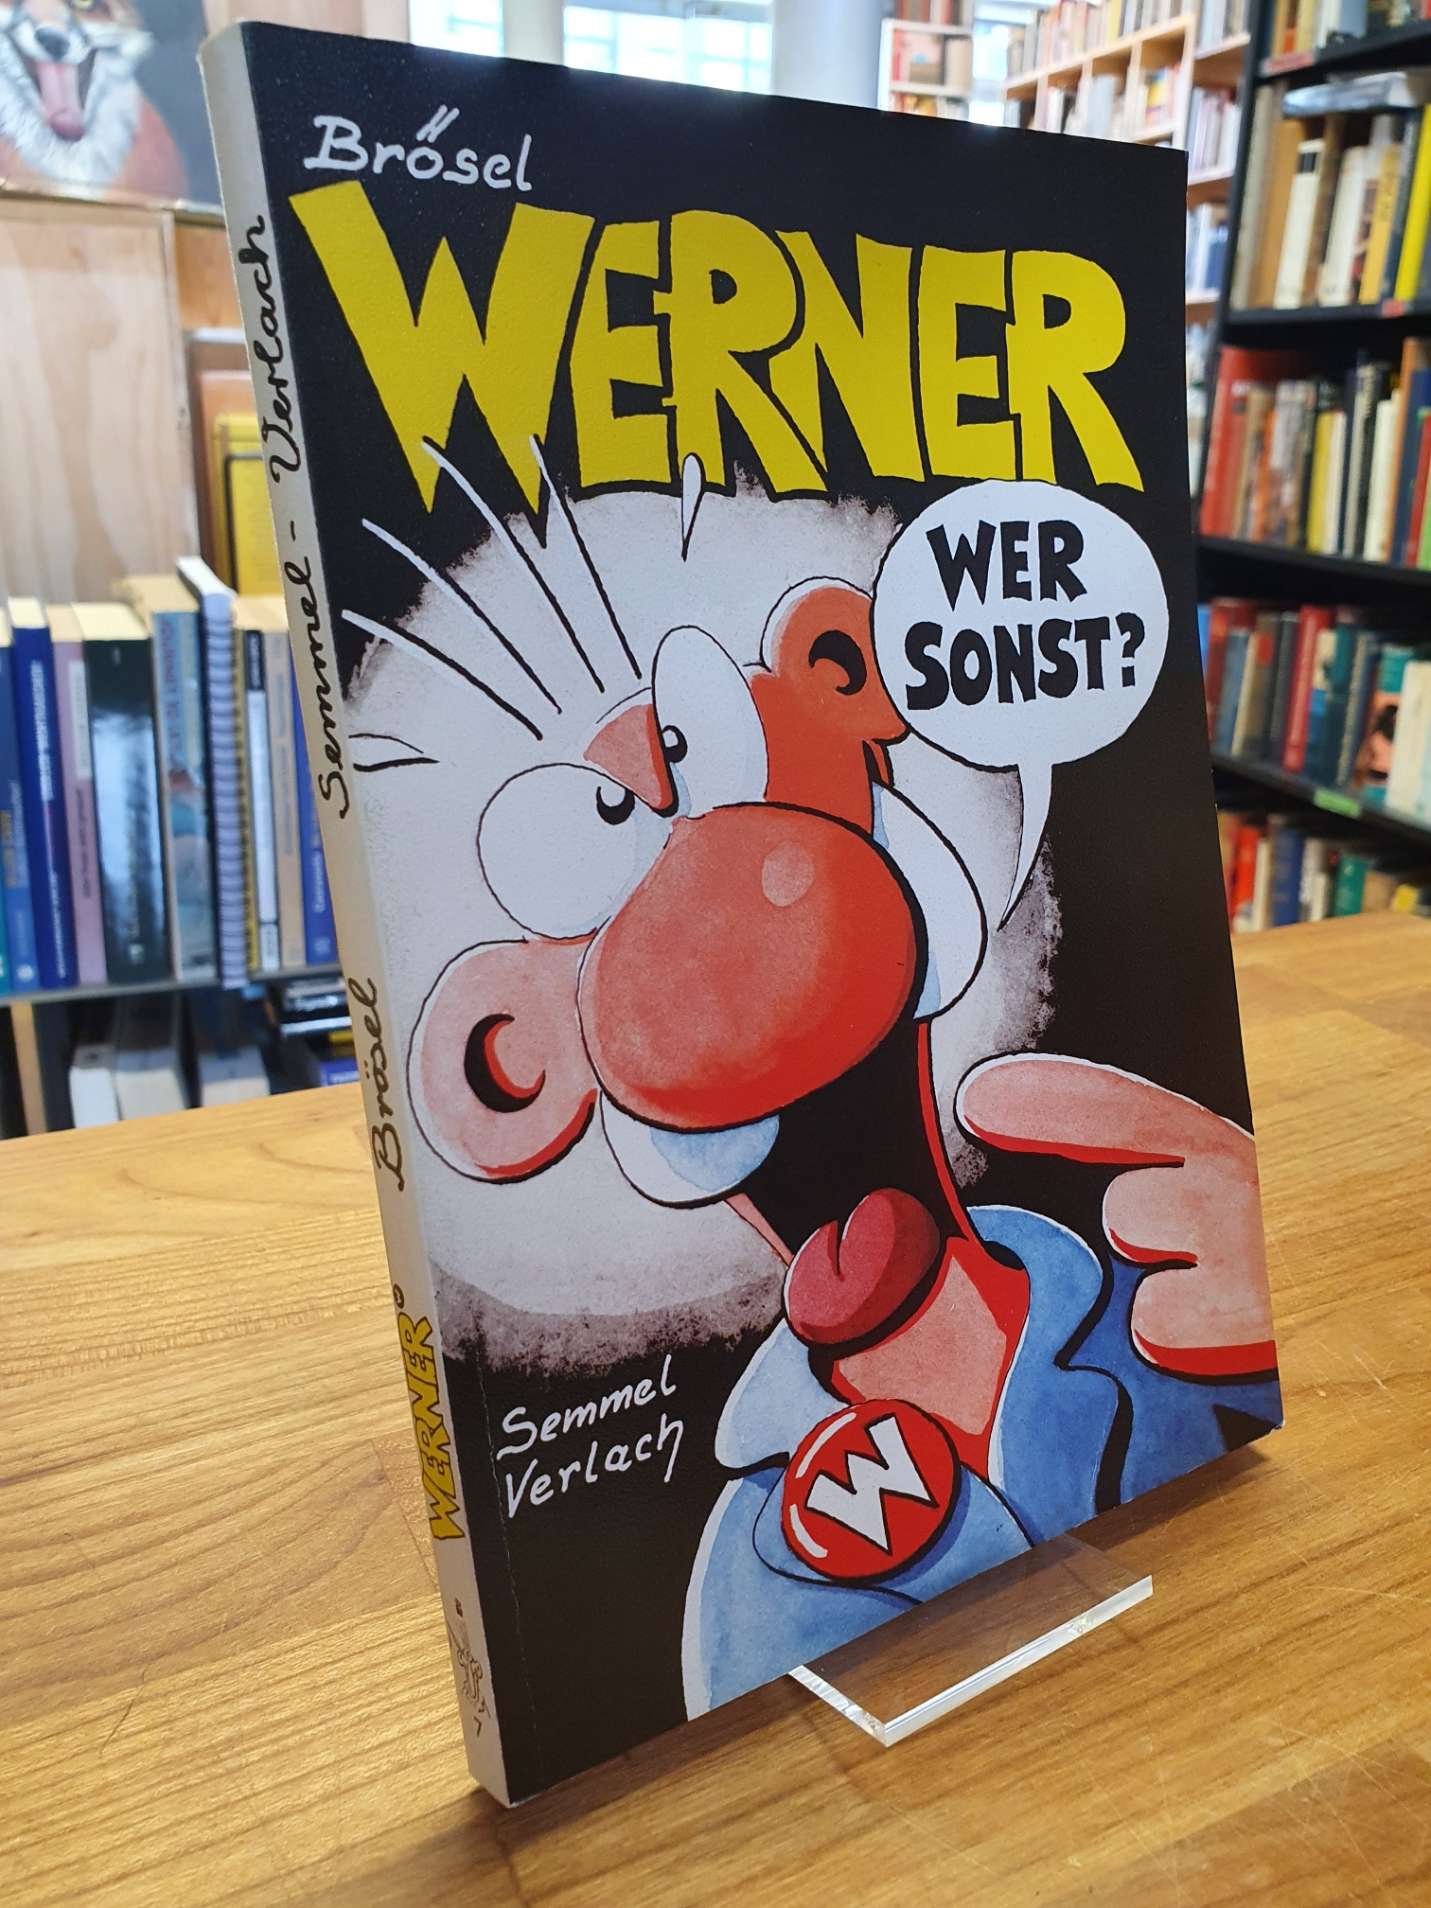 Brösel, Werner, wer sonst?